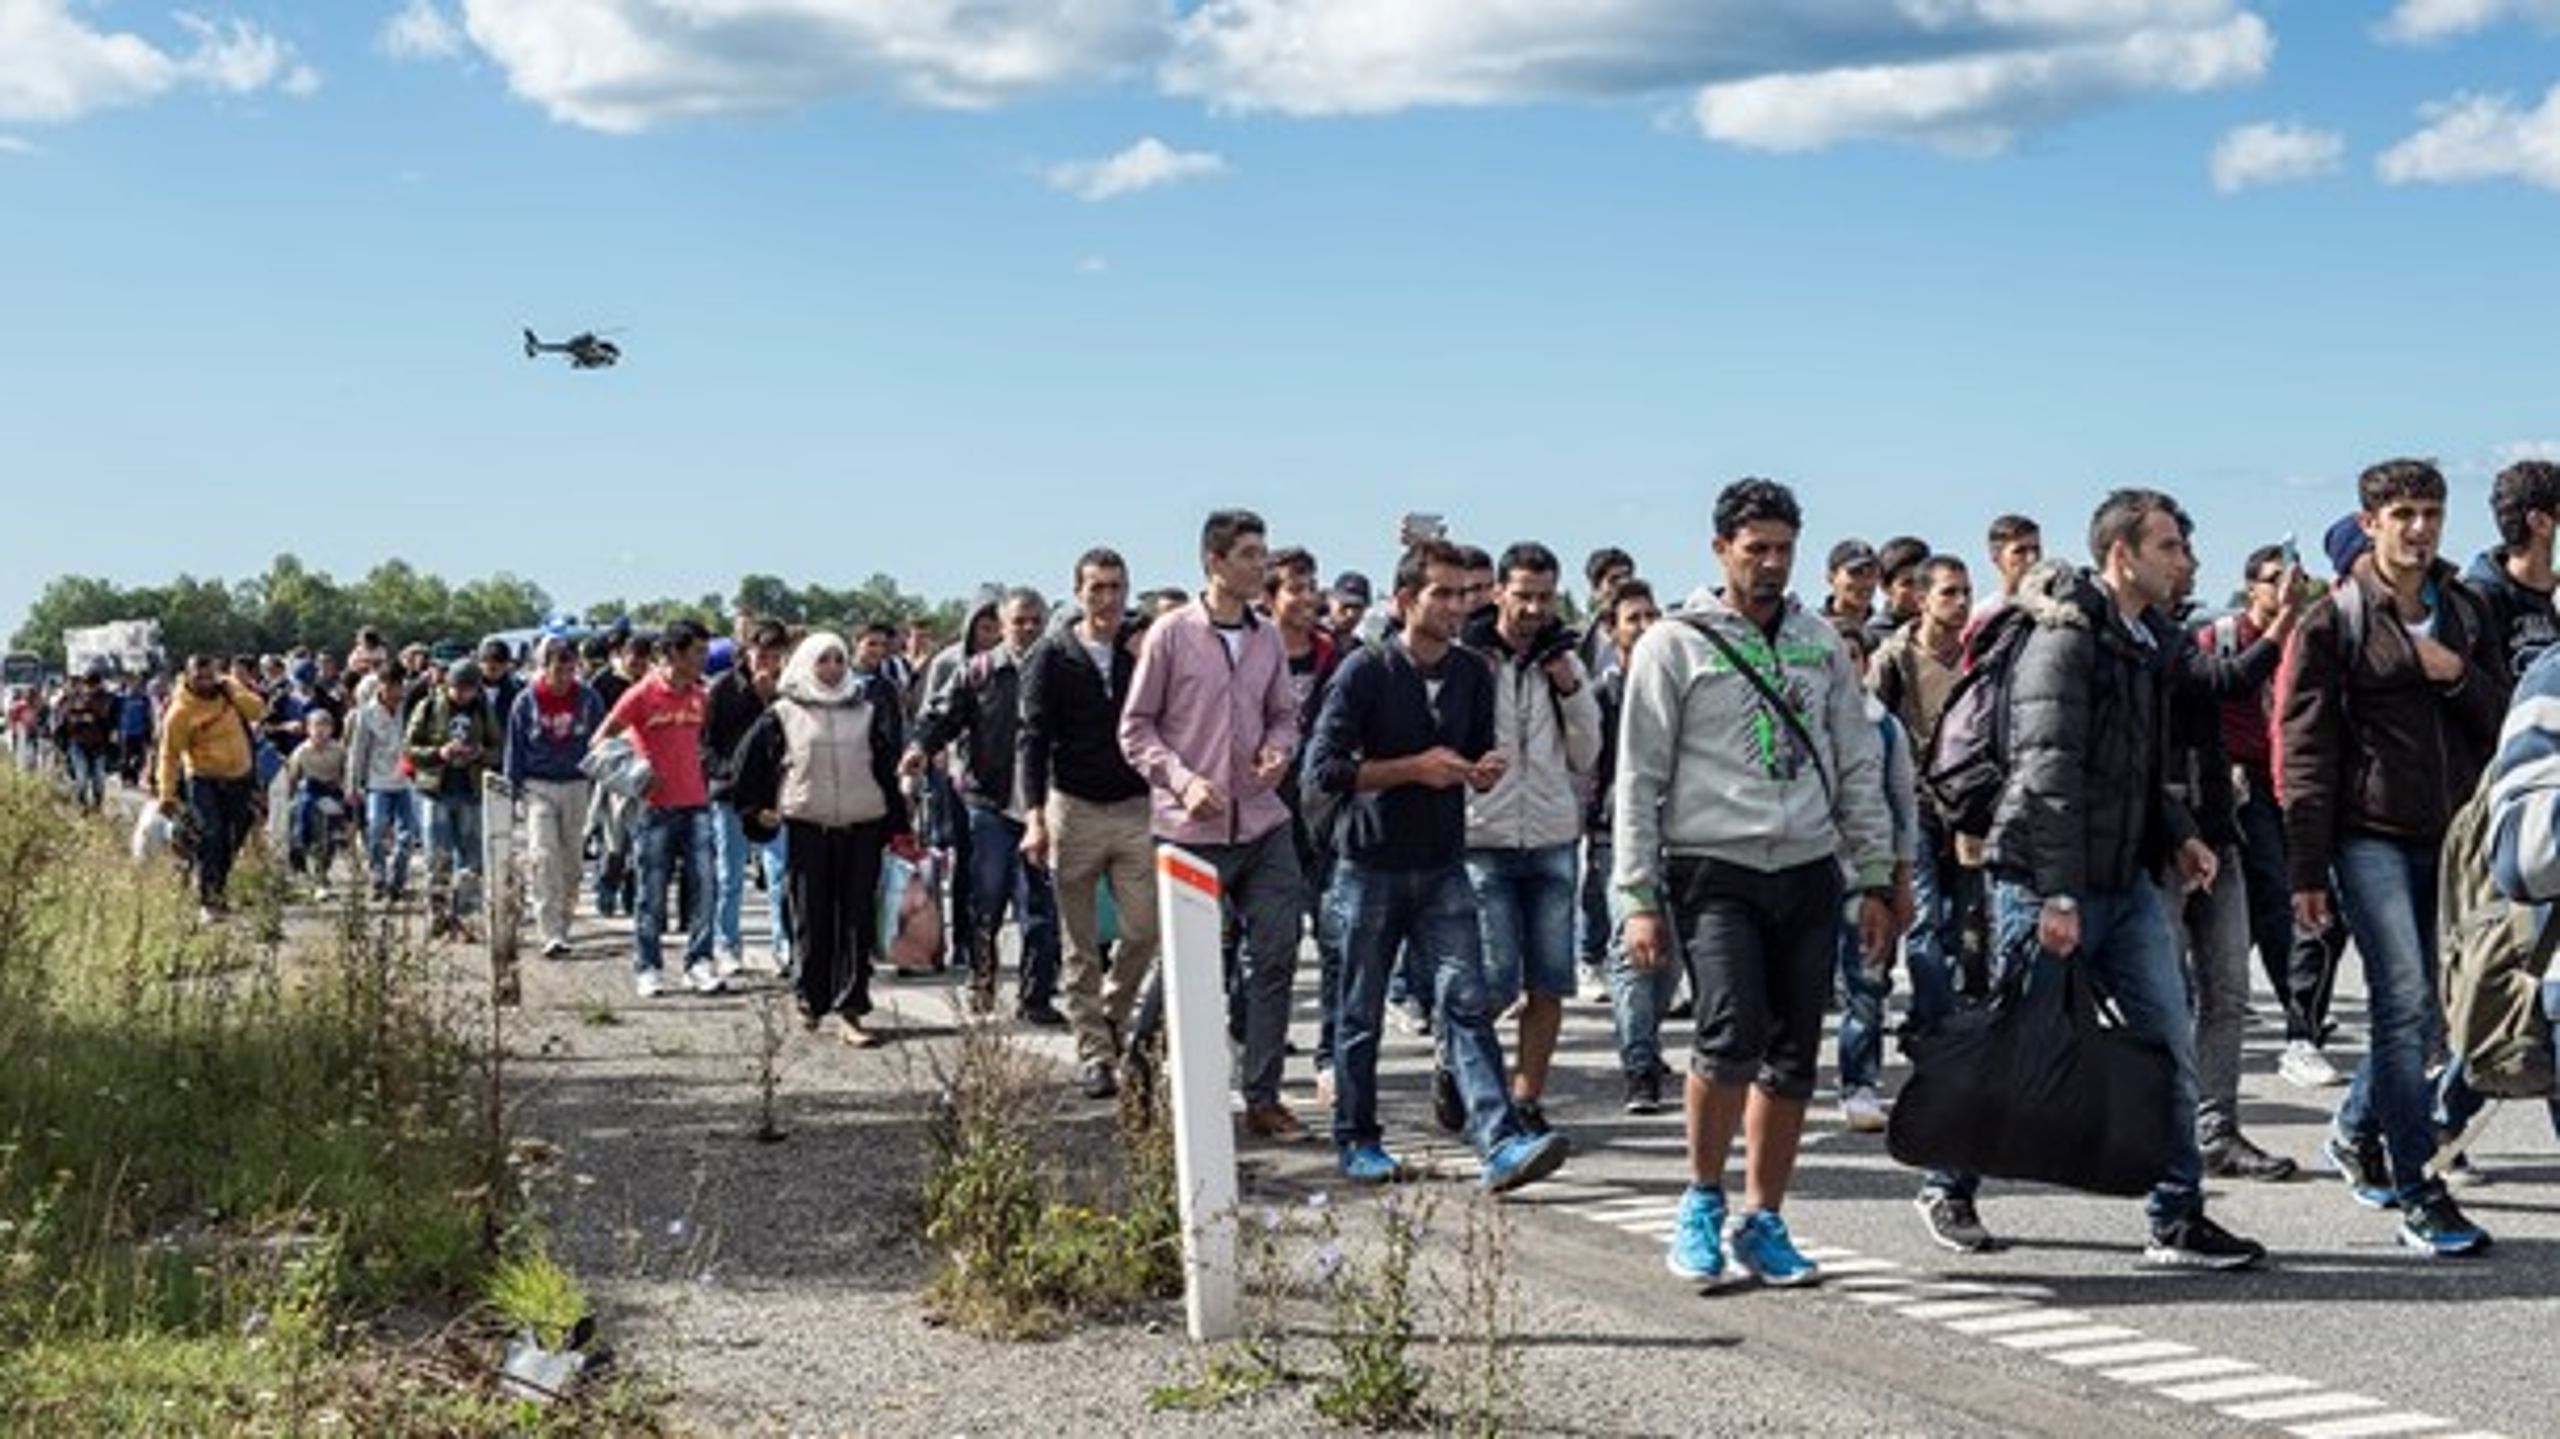 En større og større andel af dansk udviklingsbistand går til at betale for flygtningemodtagelse i Danmark. Rigsrevisionen skal blandt andet undersøge, om det er gjort i overensstemmelse med reglerne.&nbsp;